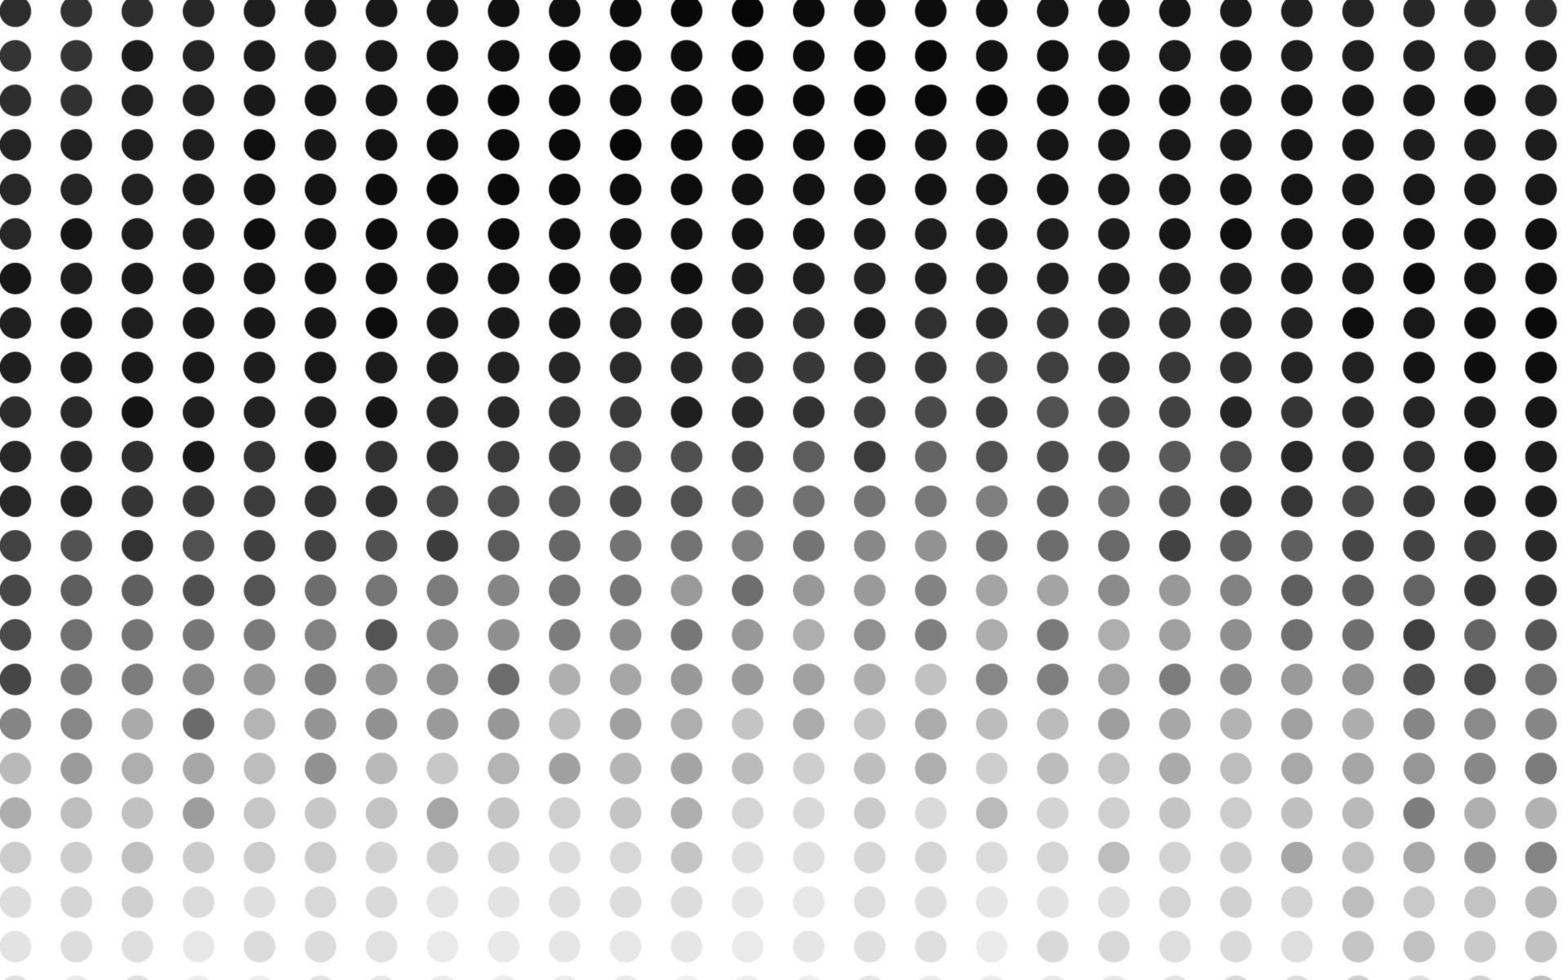 layout de vetor cinza claro prata com formas de círculo.